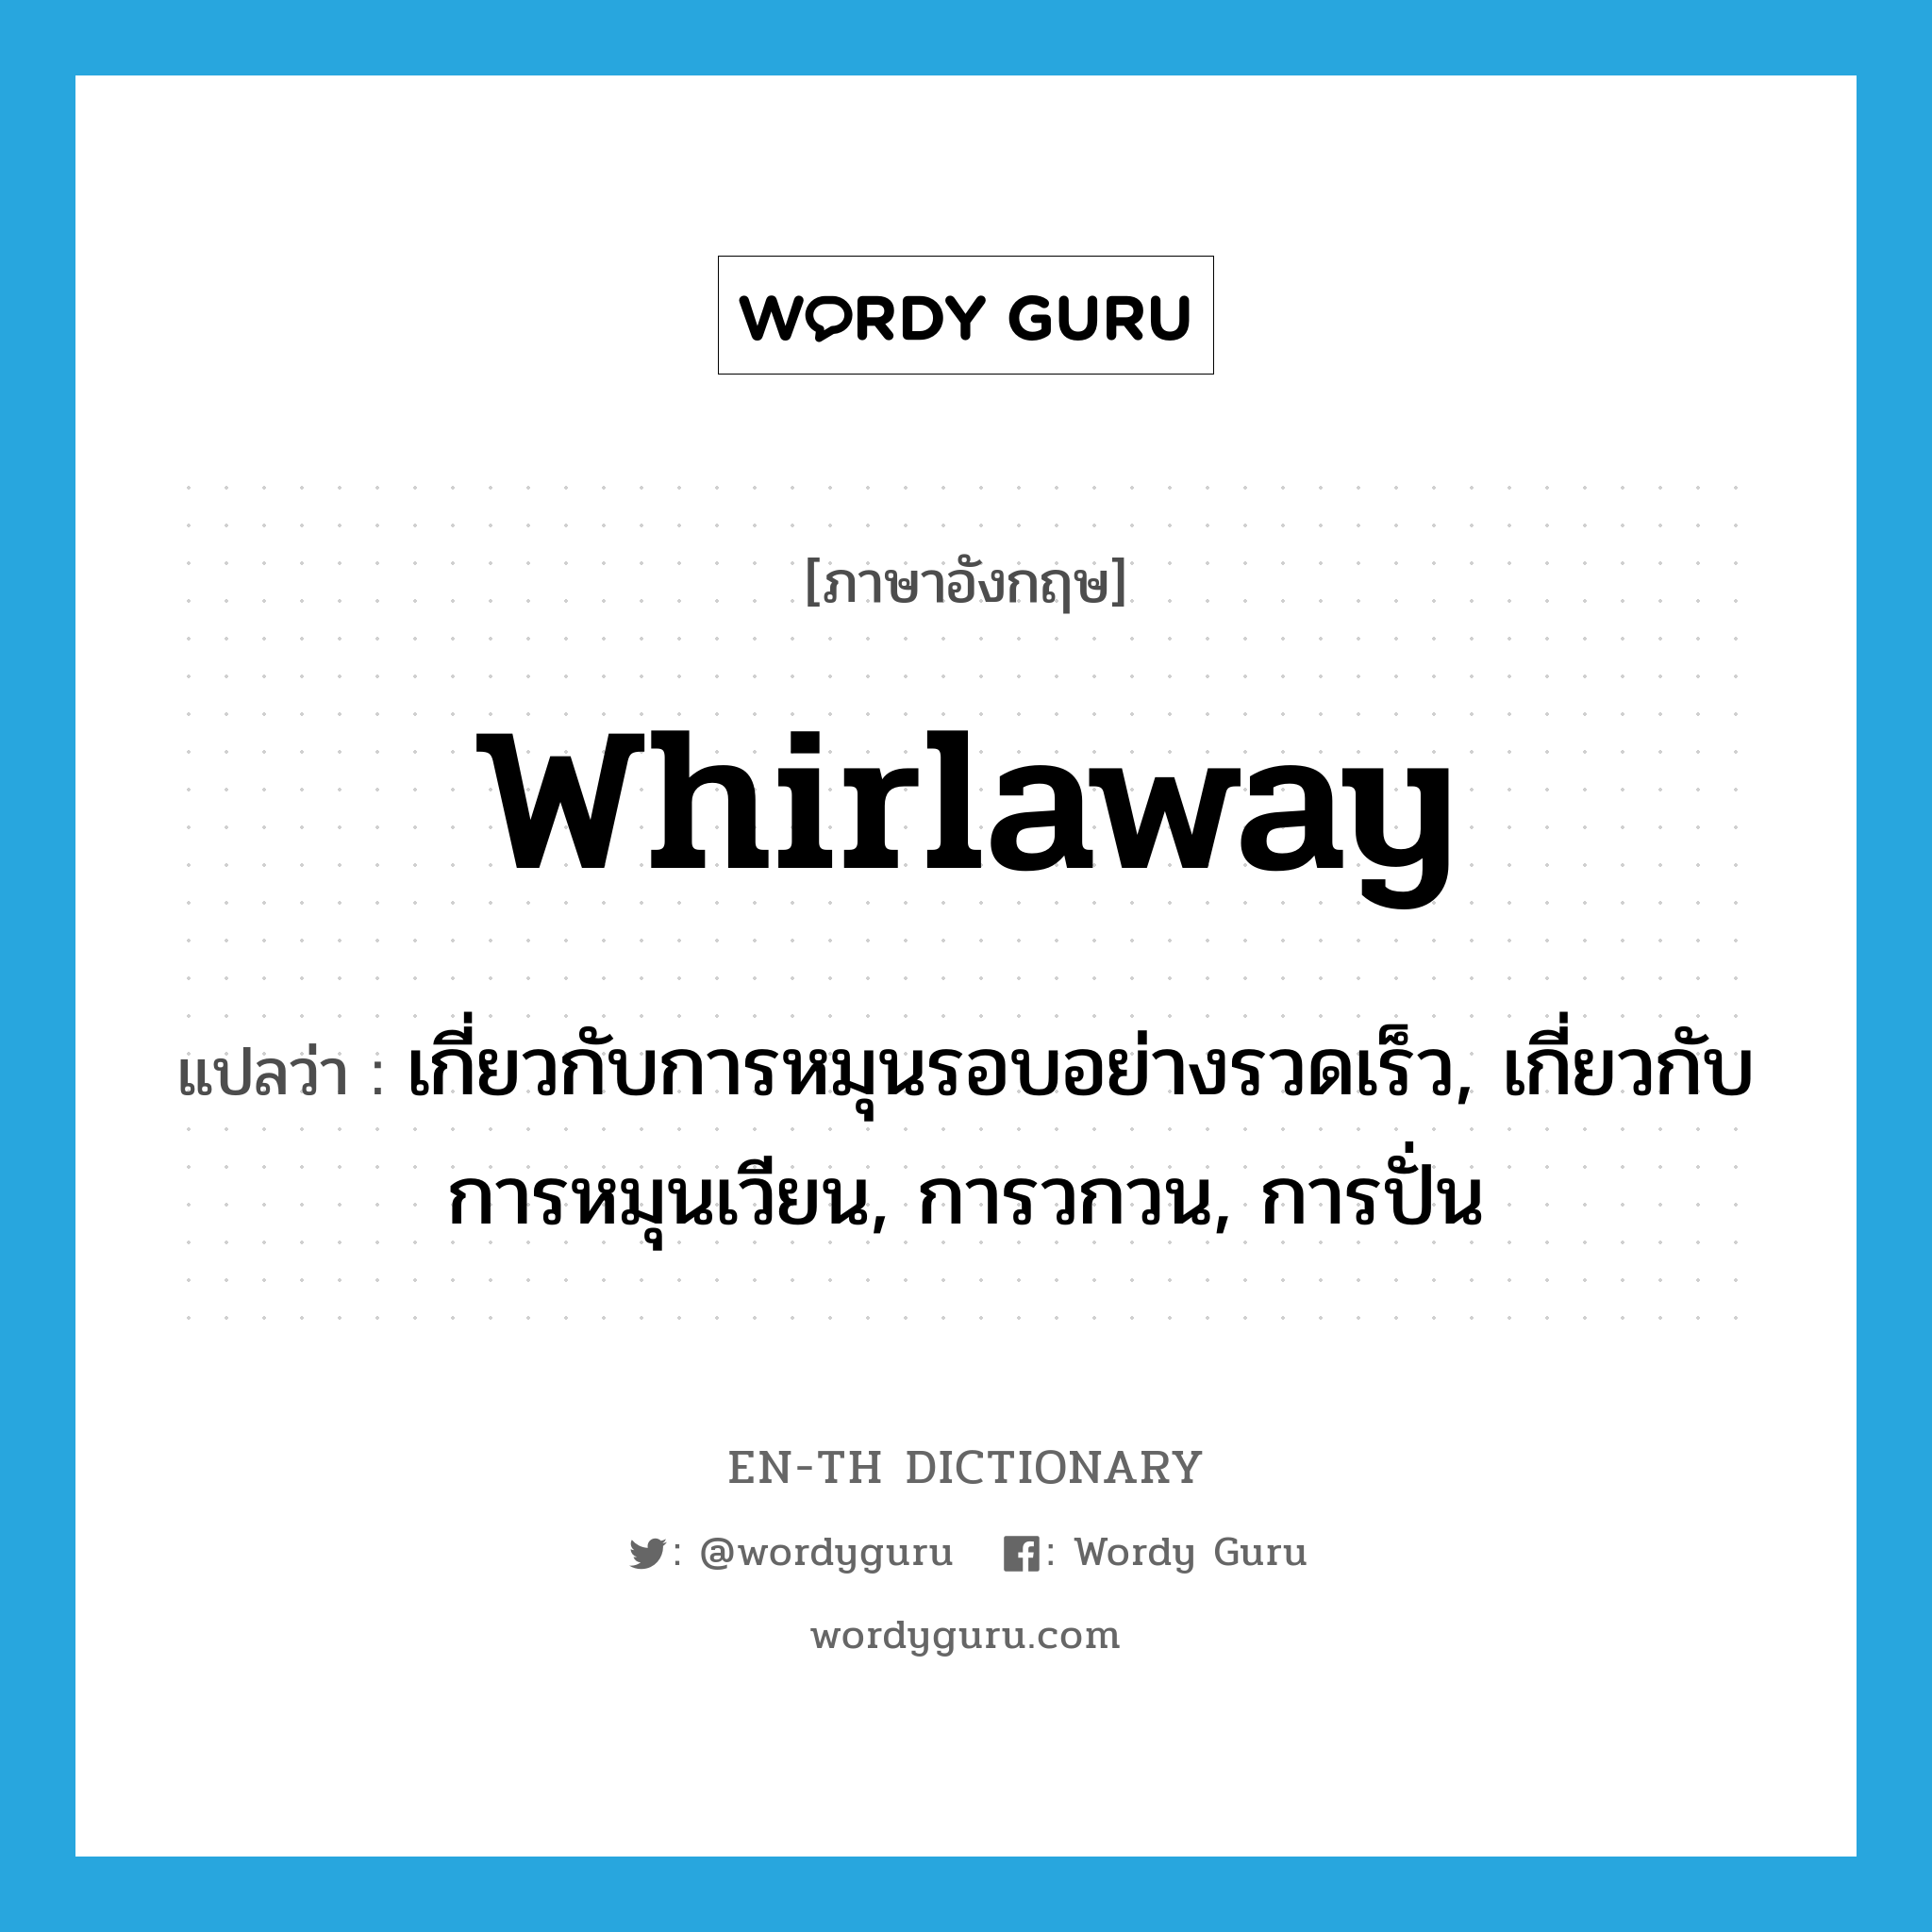 whirlaway แปลว่า?, คำศัพท์ภาษาอังกฤษ whirlaway แปลว่า เกี่ยวกับการหมุนรอบอย่างรวดเร็ว, เกี่ยวกับการหมุนเวียน, การวกวน, การปั่น ประเภท ADJ หมวด ADJ